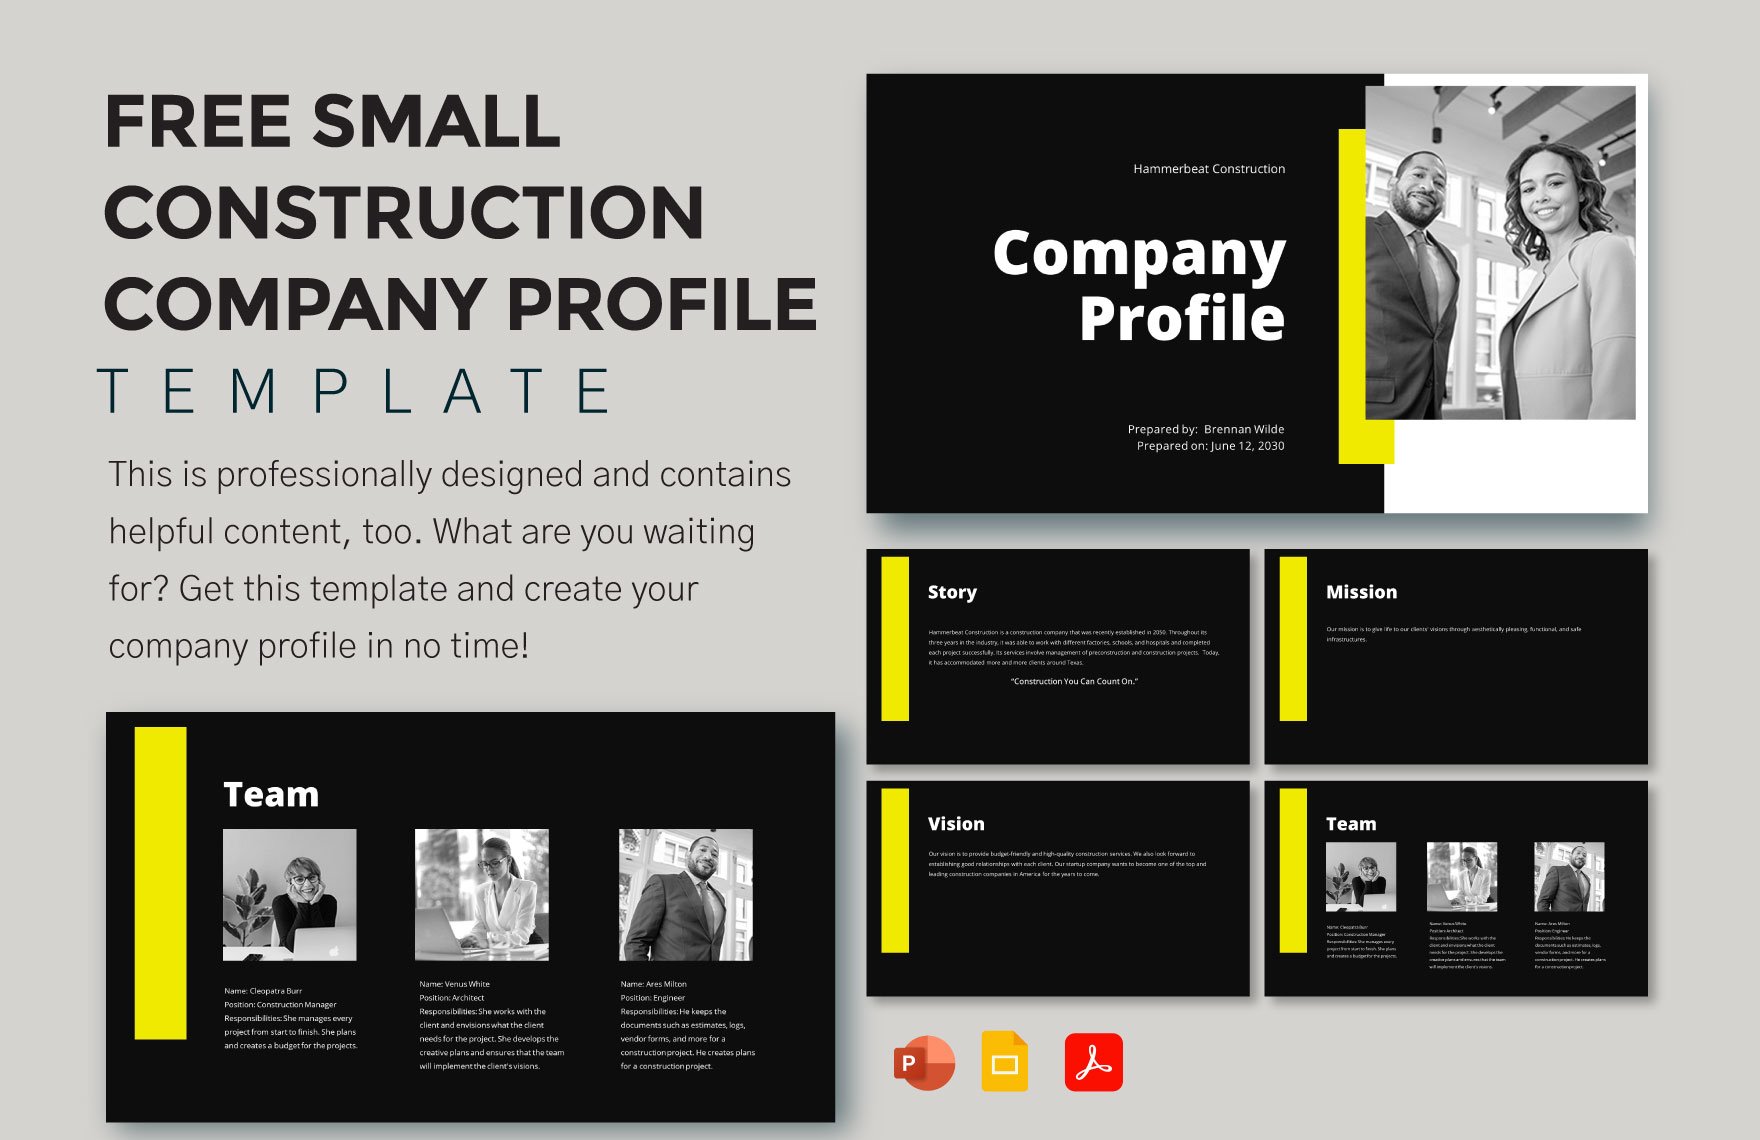 Small Construction Company Profile Template